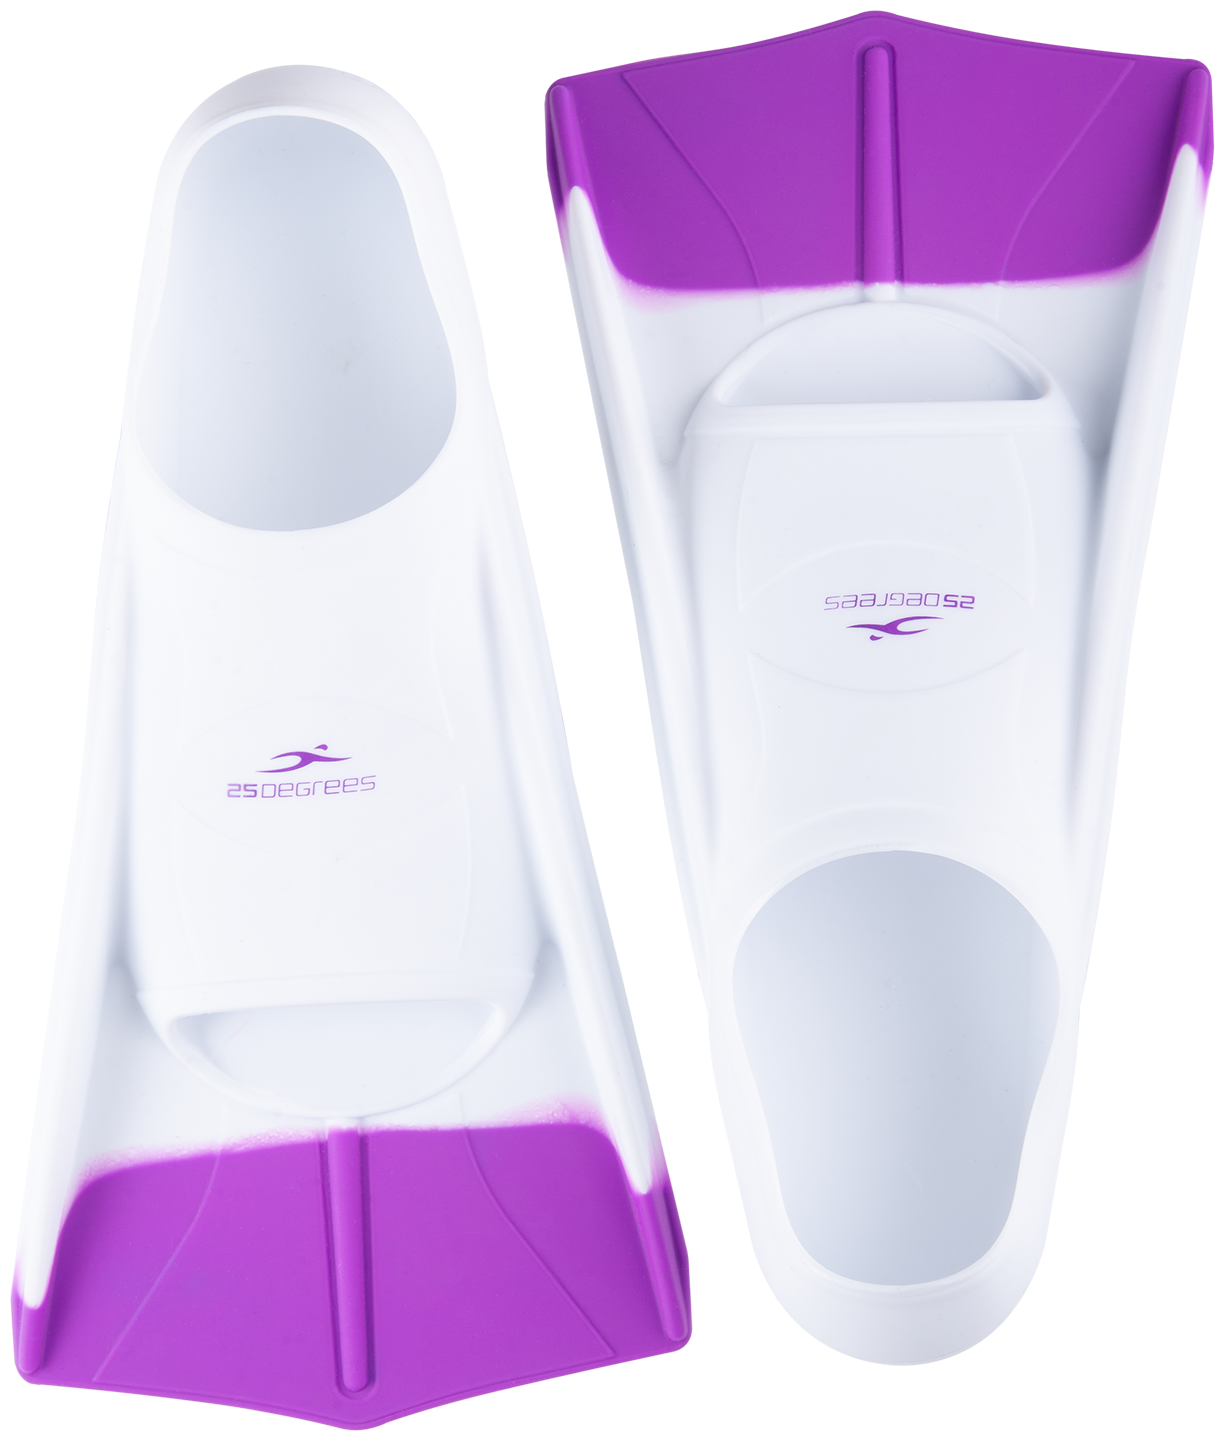 Ласты тренировочные 25degrees Pooljet White/purple, Xl